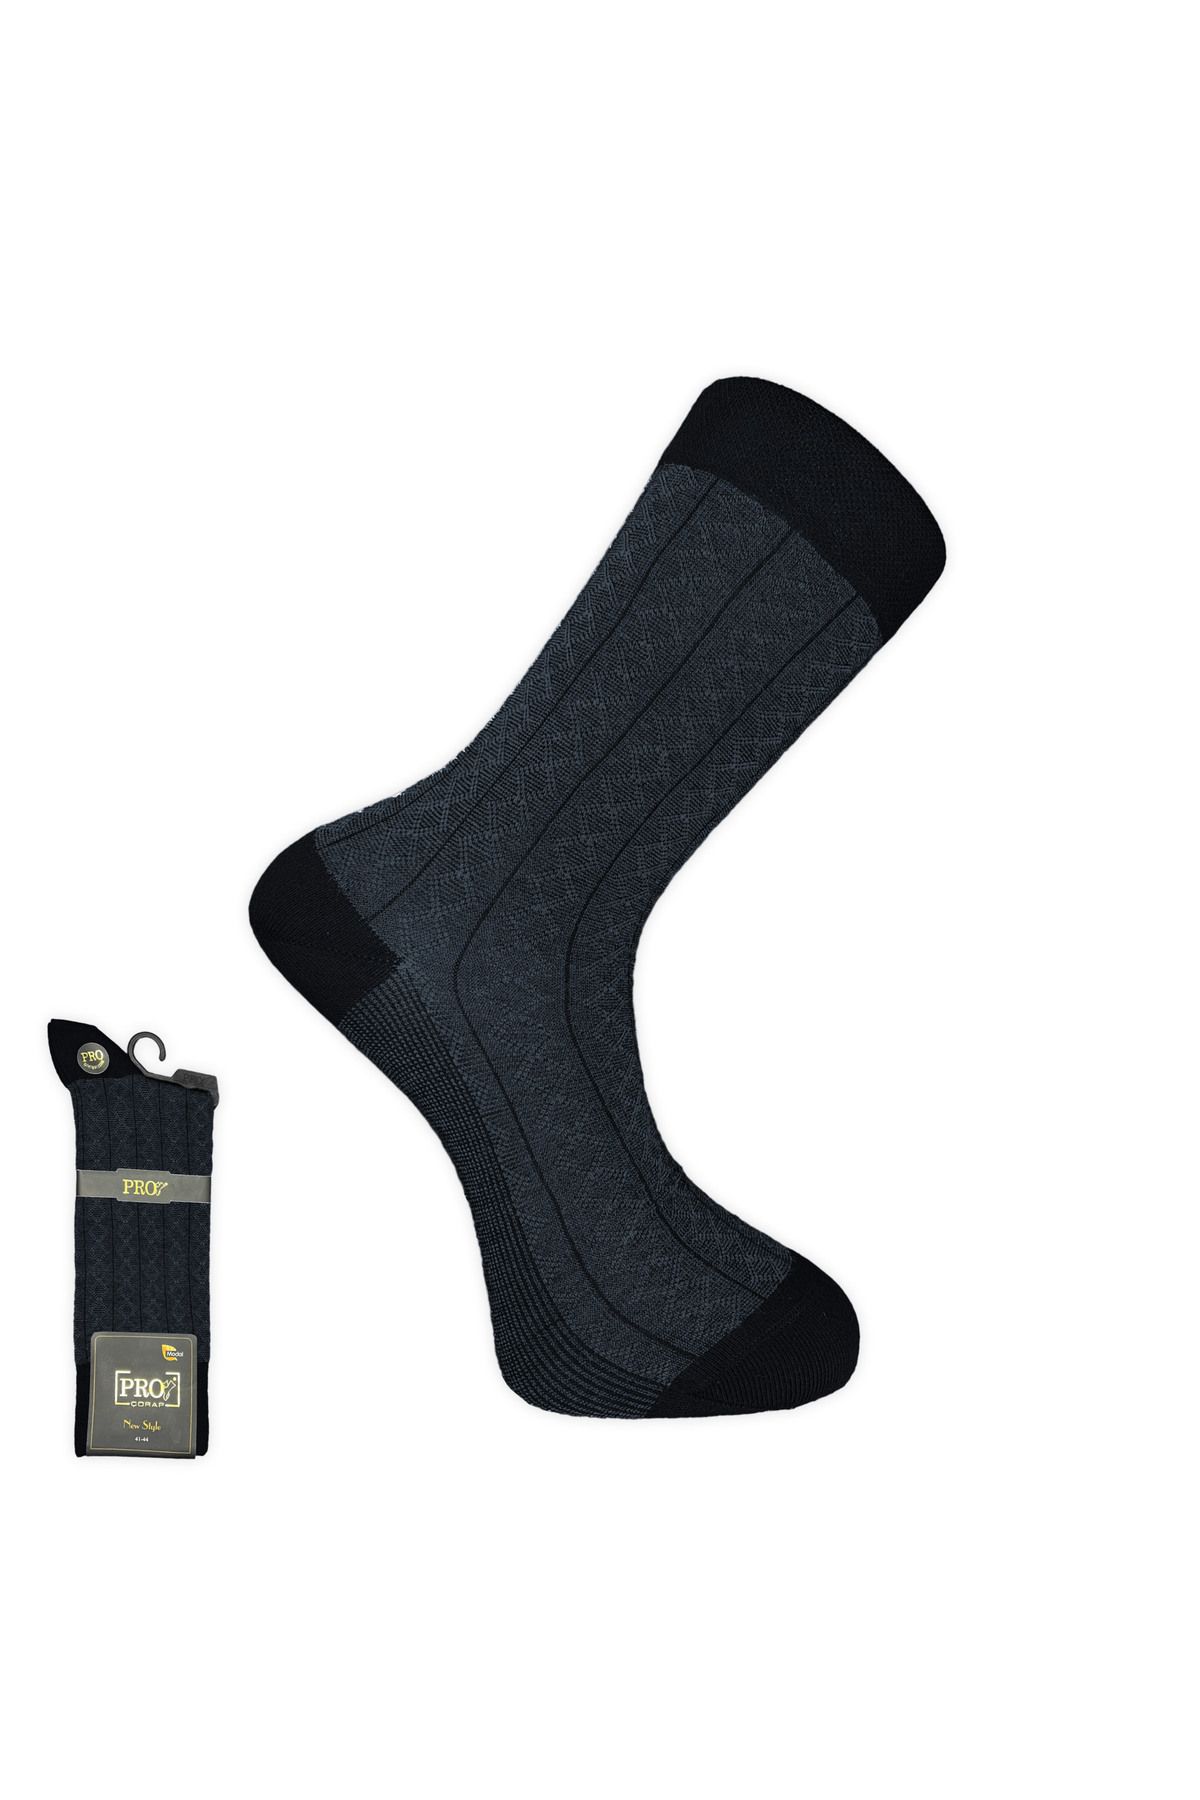 Pro Çorap Rambutan Modal Erkek Çorabı Siyah (18132-R1)